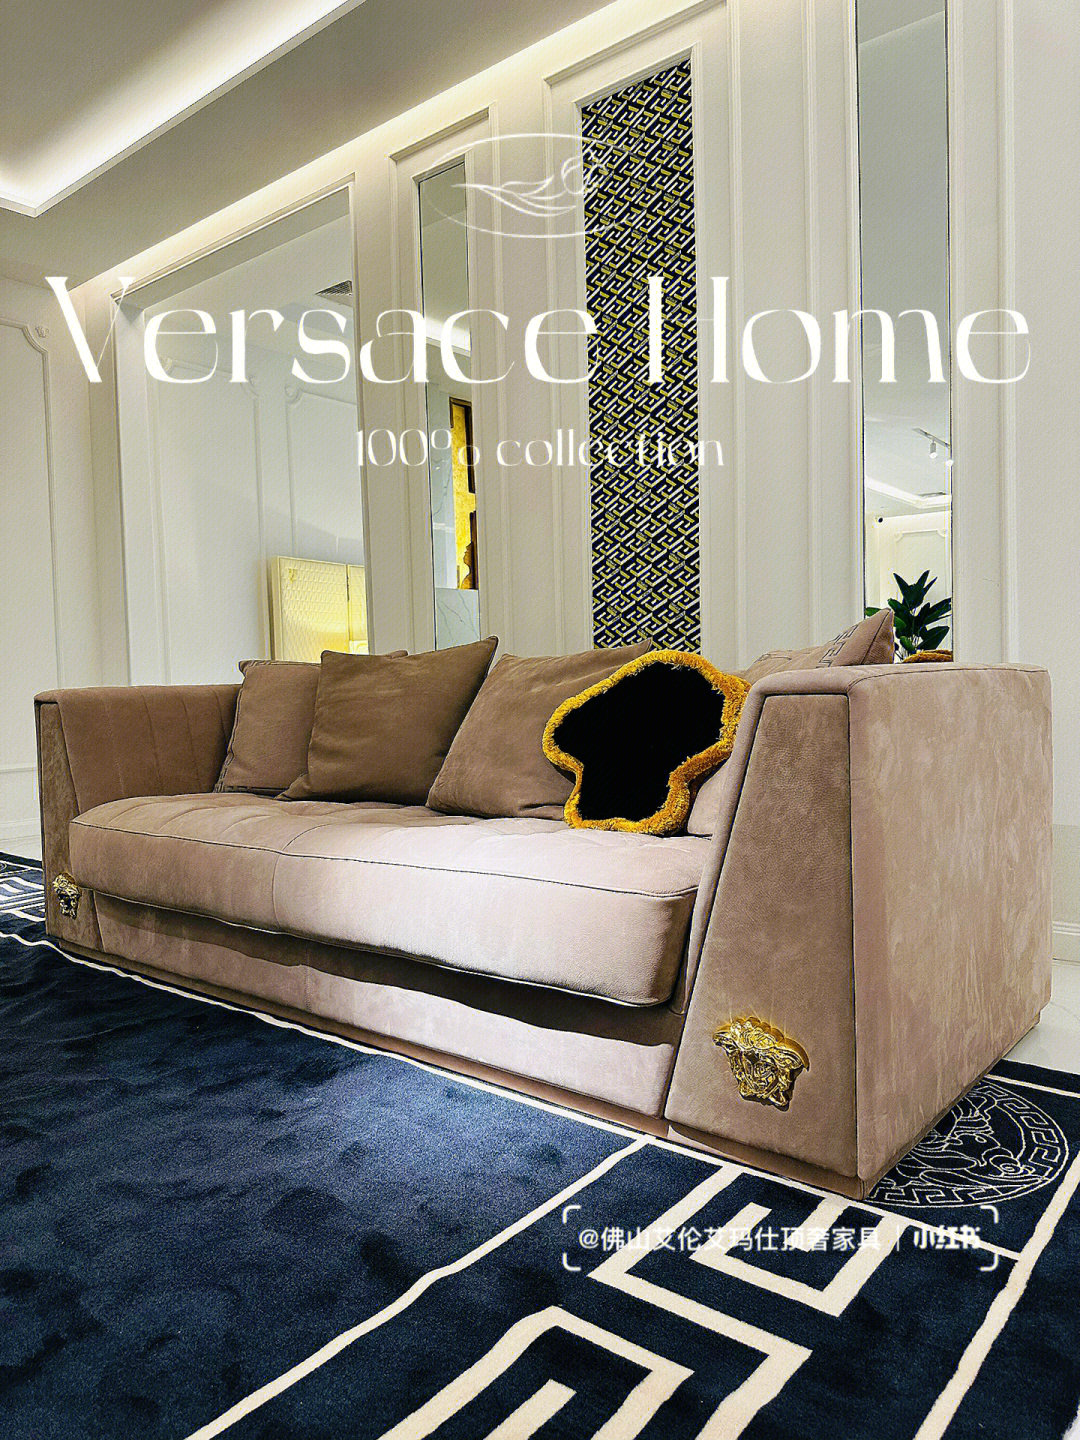 沙发78这个系列体现了versace品牌的传统,是versace美杜莎经典标志